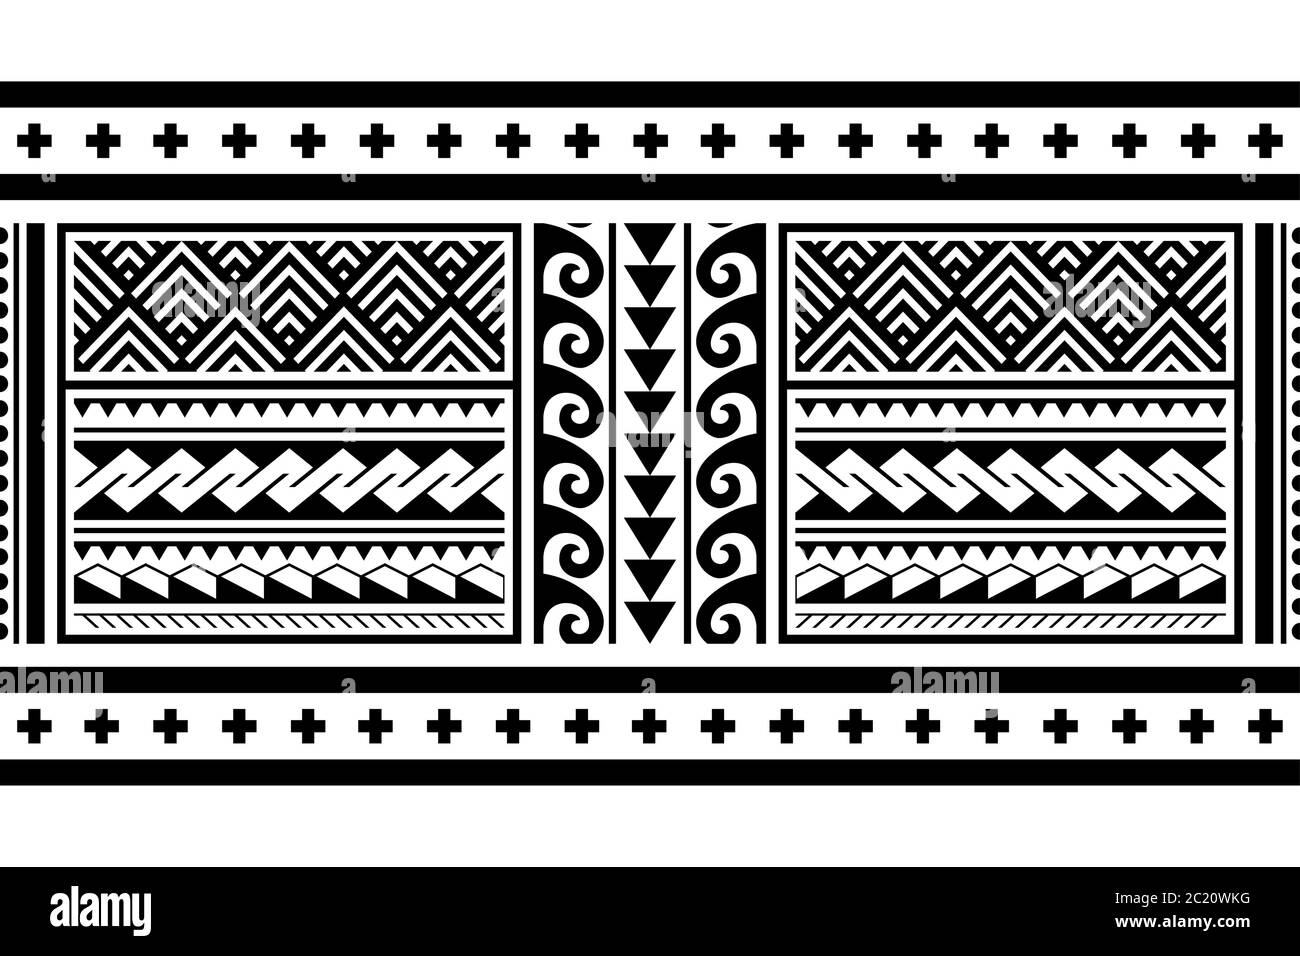 Tribal Ethnic Polynesian geometrisch nahtlose Vektor lange horizontale Muster, Hawaiian schwarz und weiß Design von Maori Tattoo Kunst inspiriert Stock Vektor